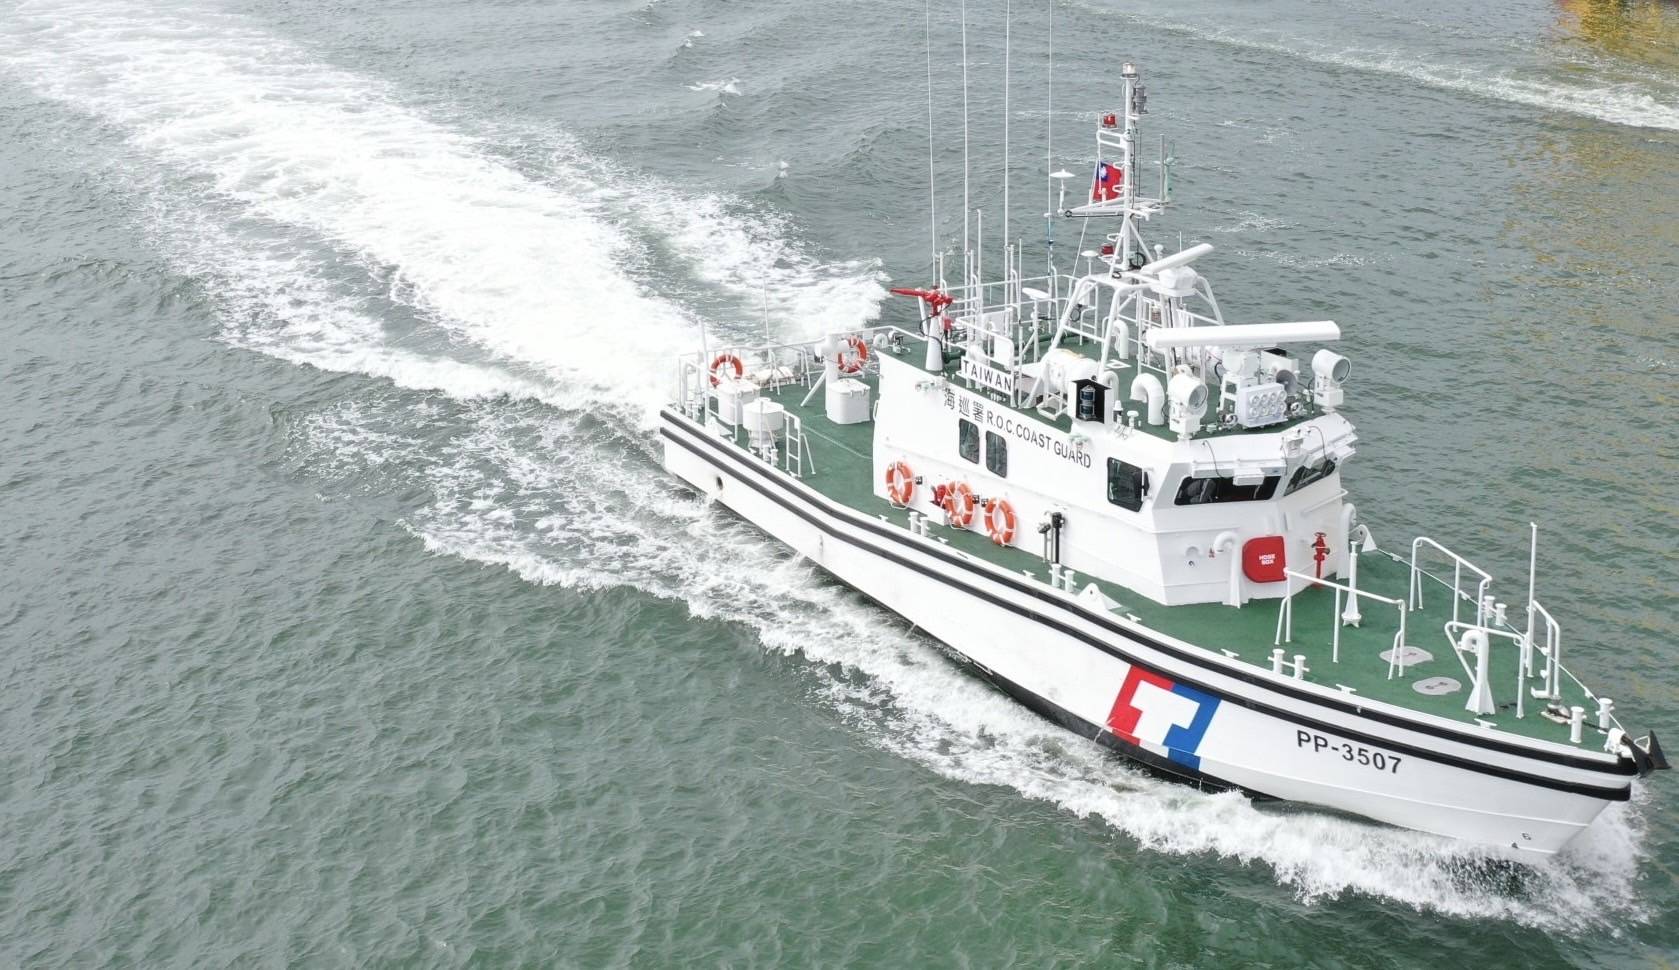 新造35噸級巡防艇加入執法 布袋海巡隊增添新能量